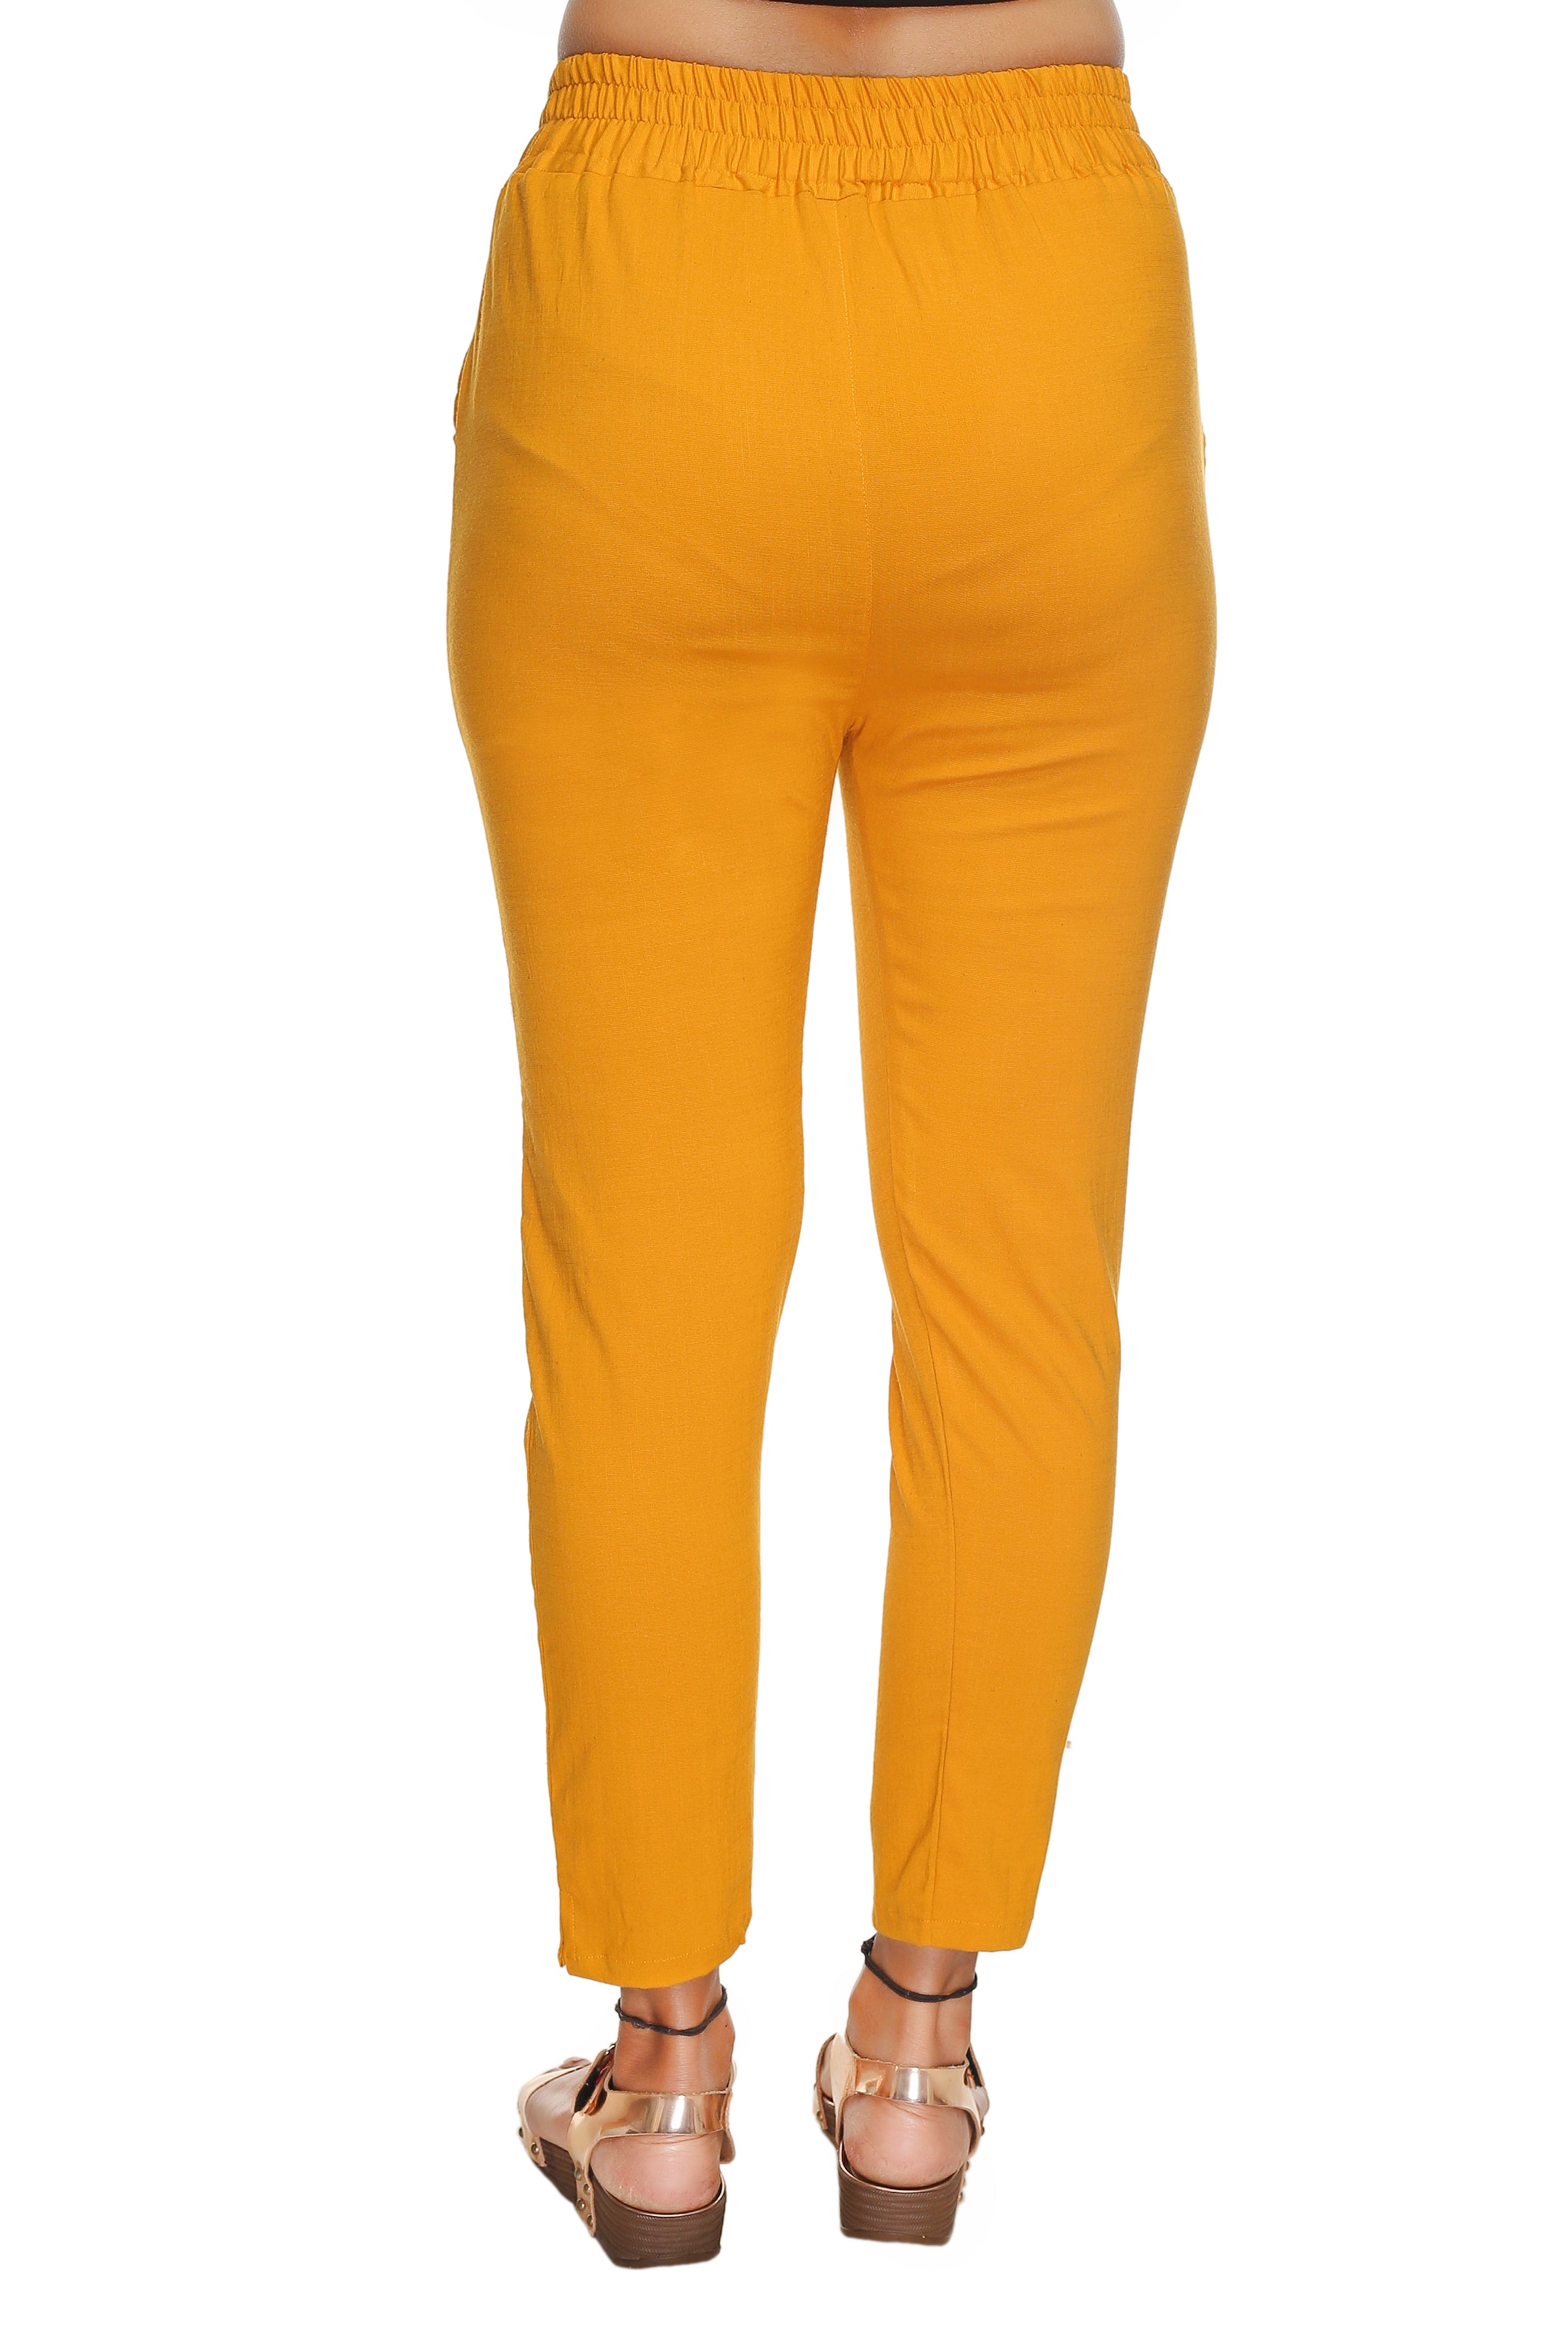 Buy Yellow Trousers  Pants for Women by Zastraa Online  Ajiocom